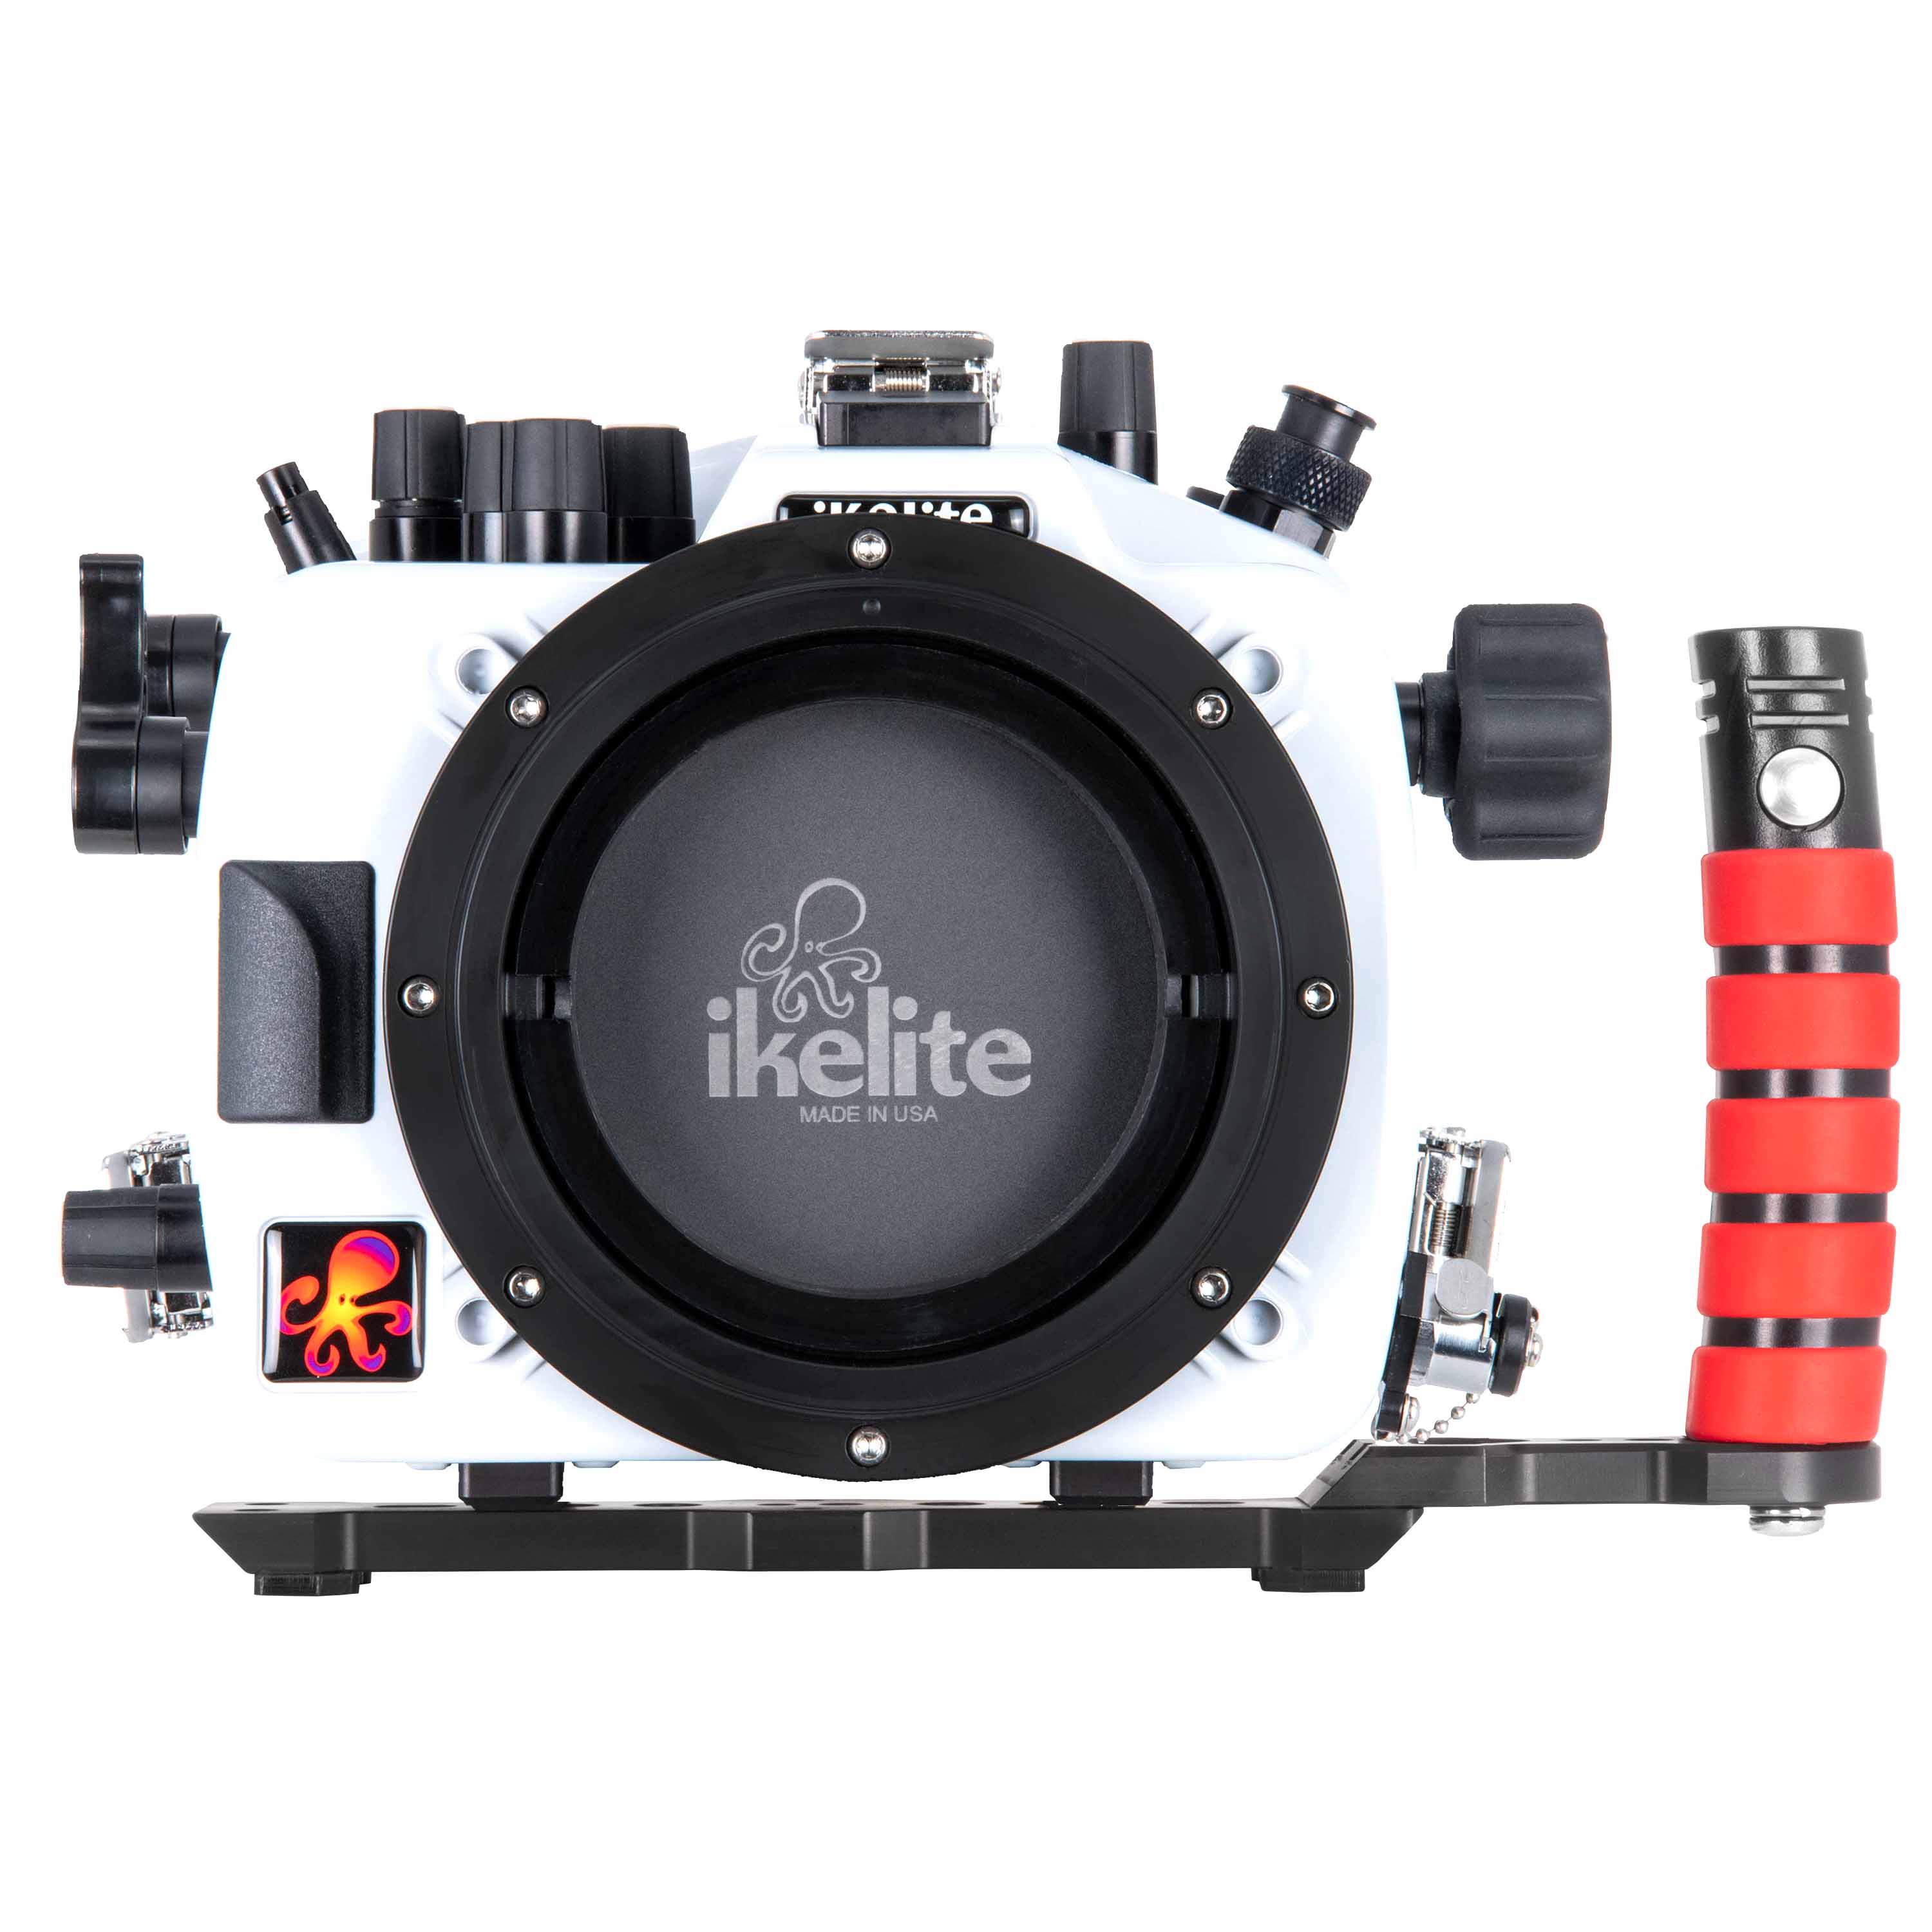 Boîtier de caméra sous-marine Fujifilm X-T4 40M/130FT avec port dôme sec  8. XF 18-55mm